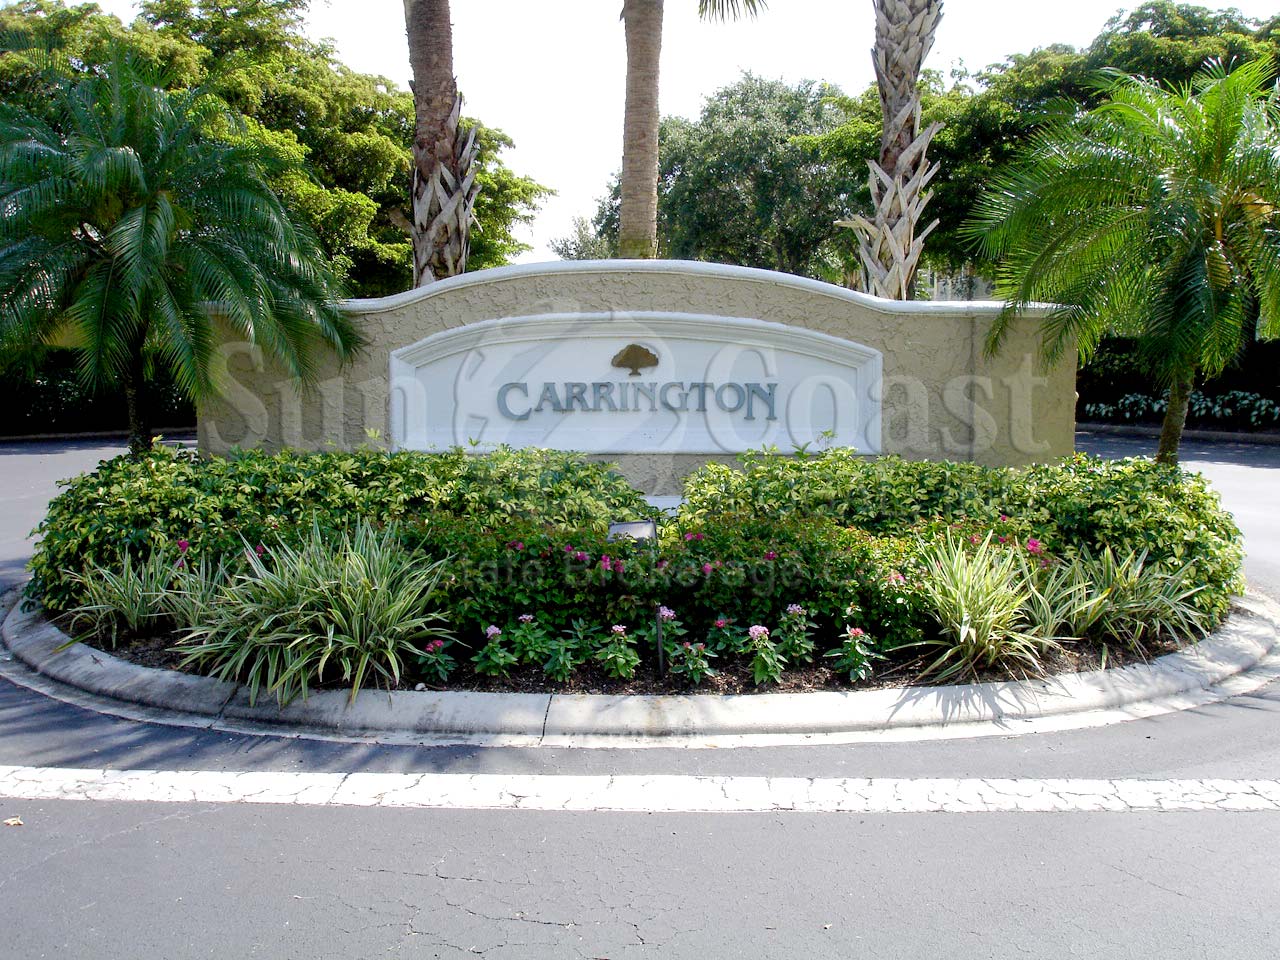 Carrington sign